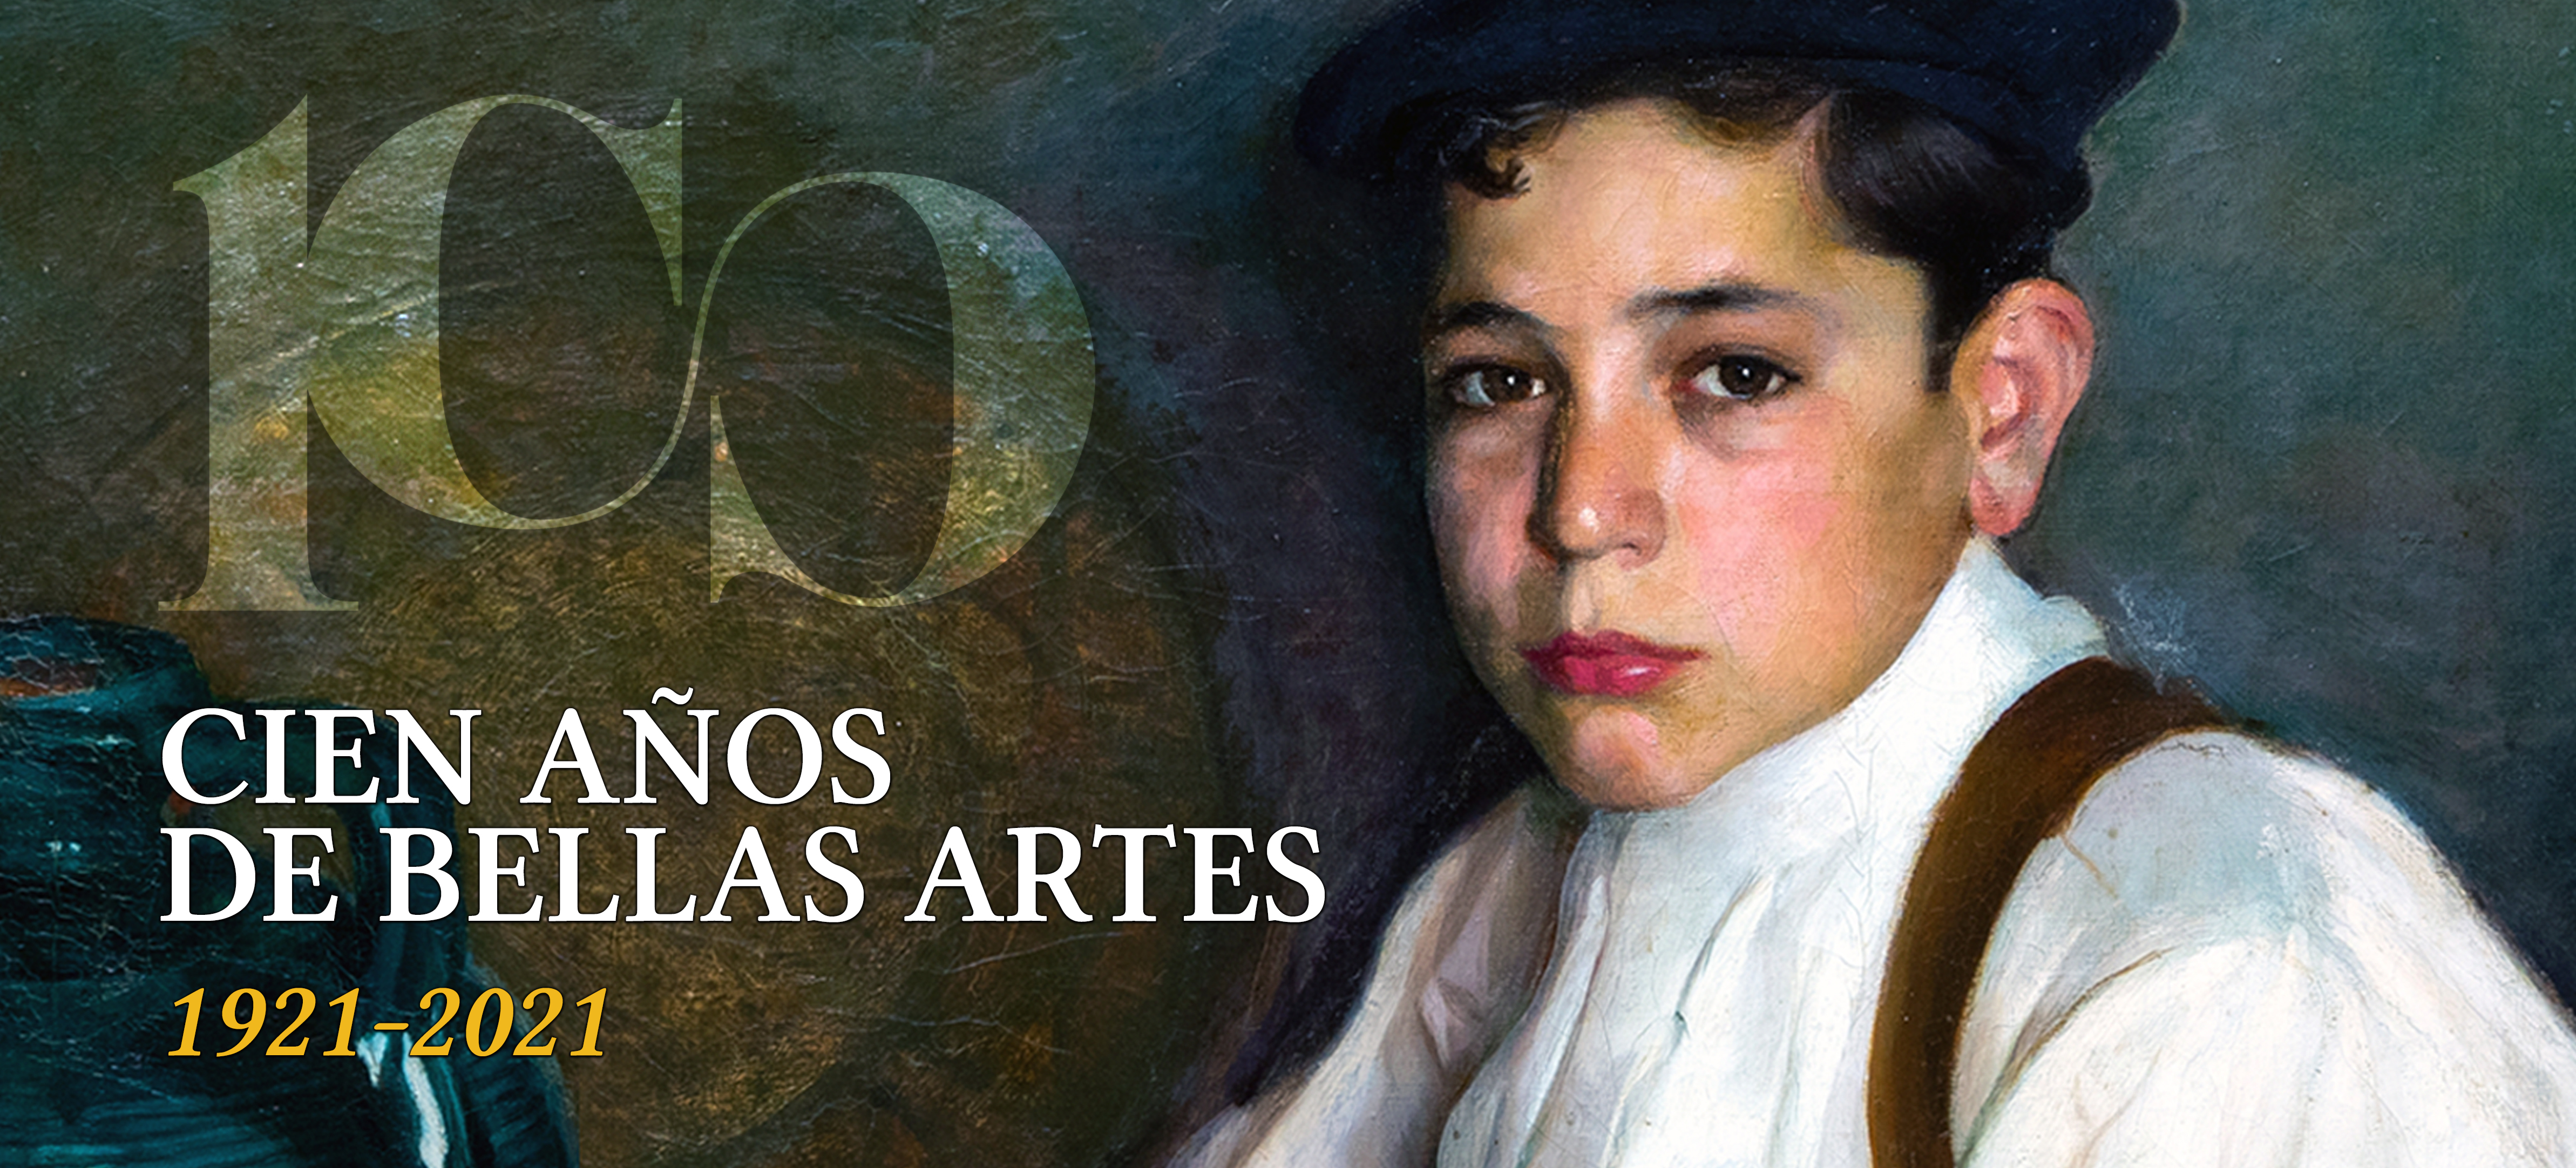 100 AÑOS DE BELLAS ARTES EN EL MUSEO DE HUELVA, 1921-2021